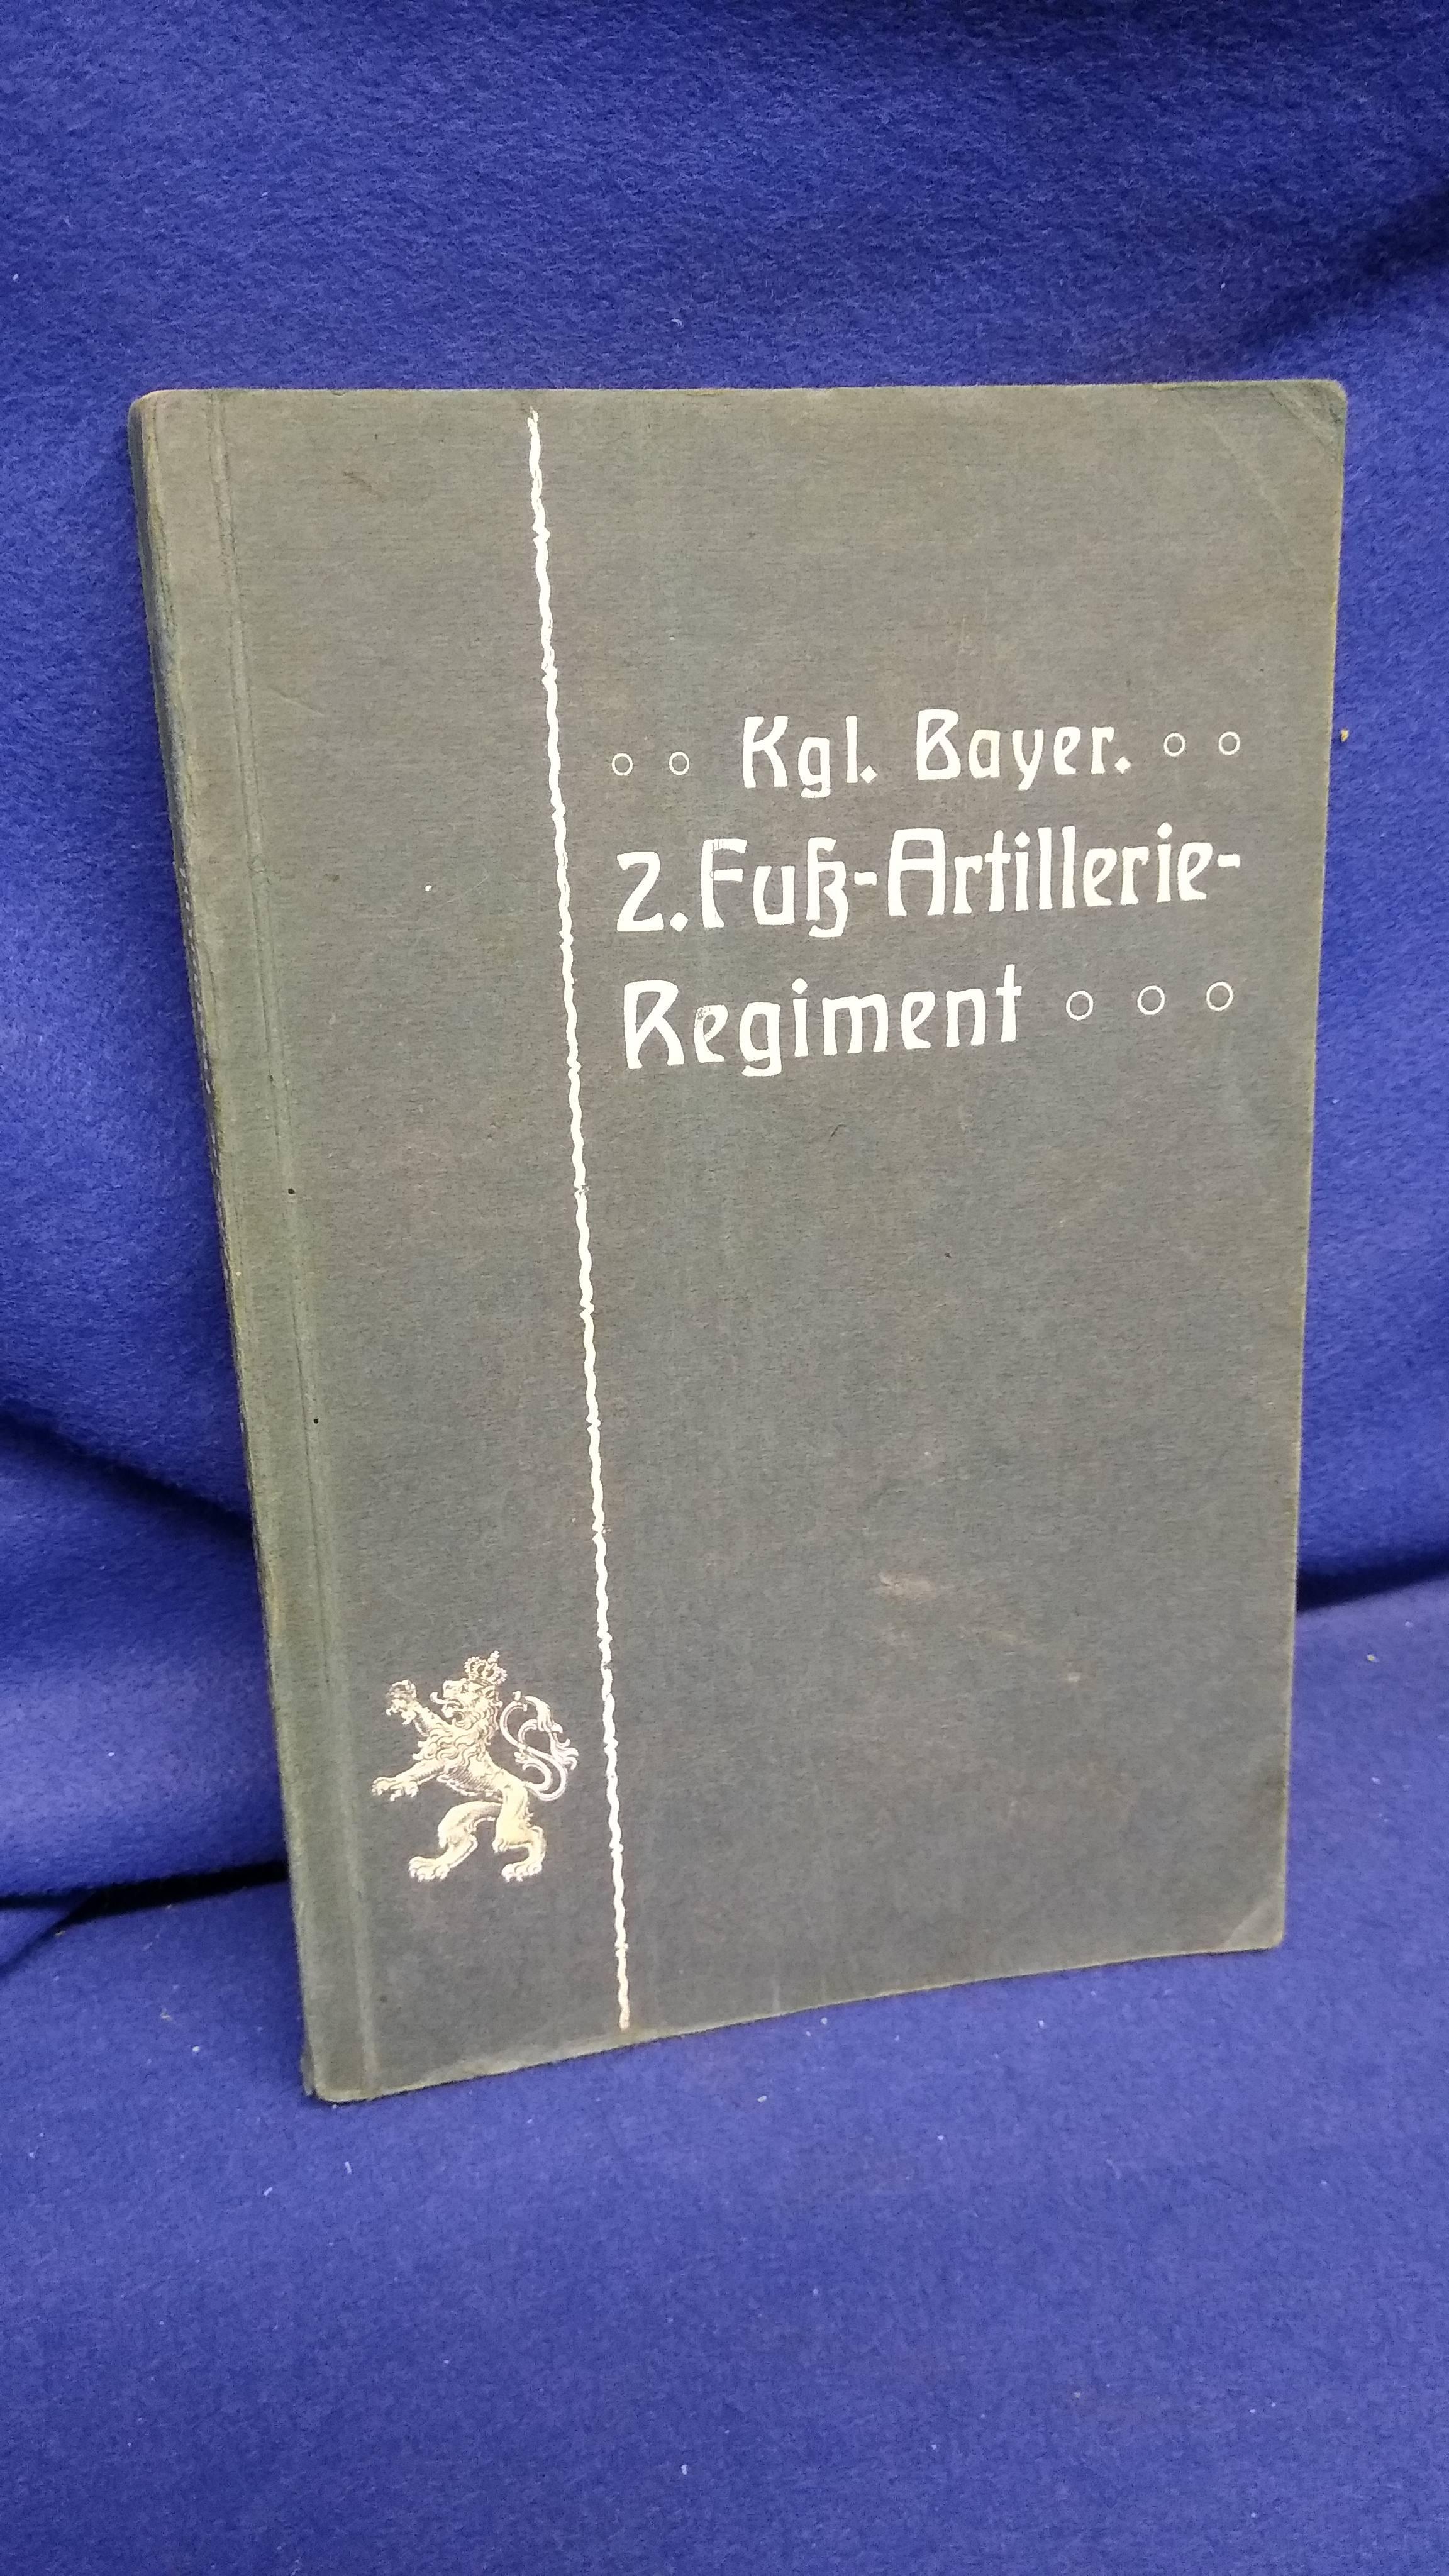 Geschichte des Königlich Bayerischen 2. Fuß-Artillerie-Regiments und seiner Stammabteilungen.